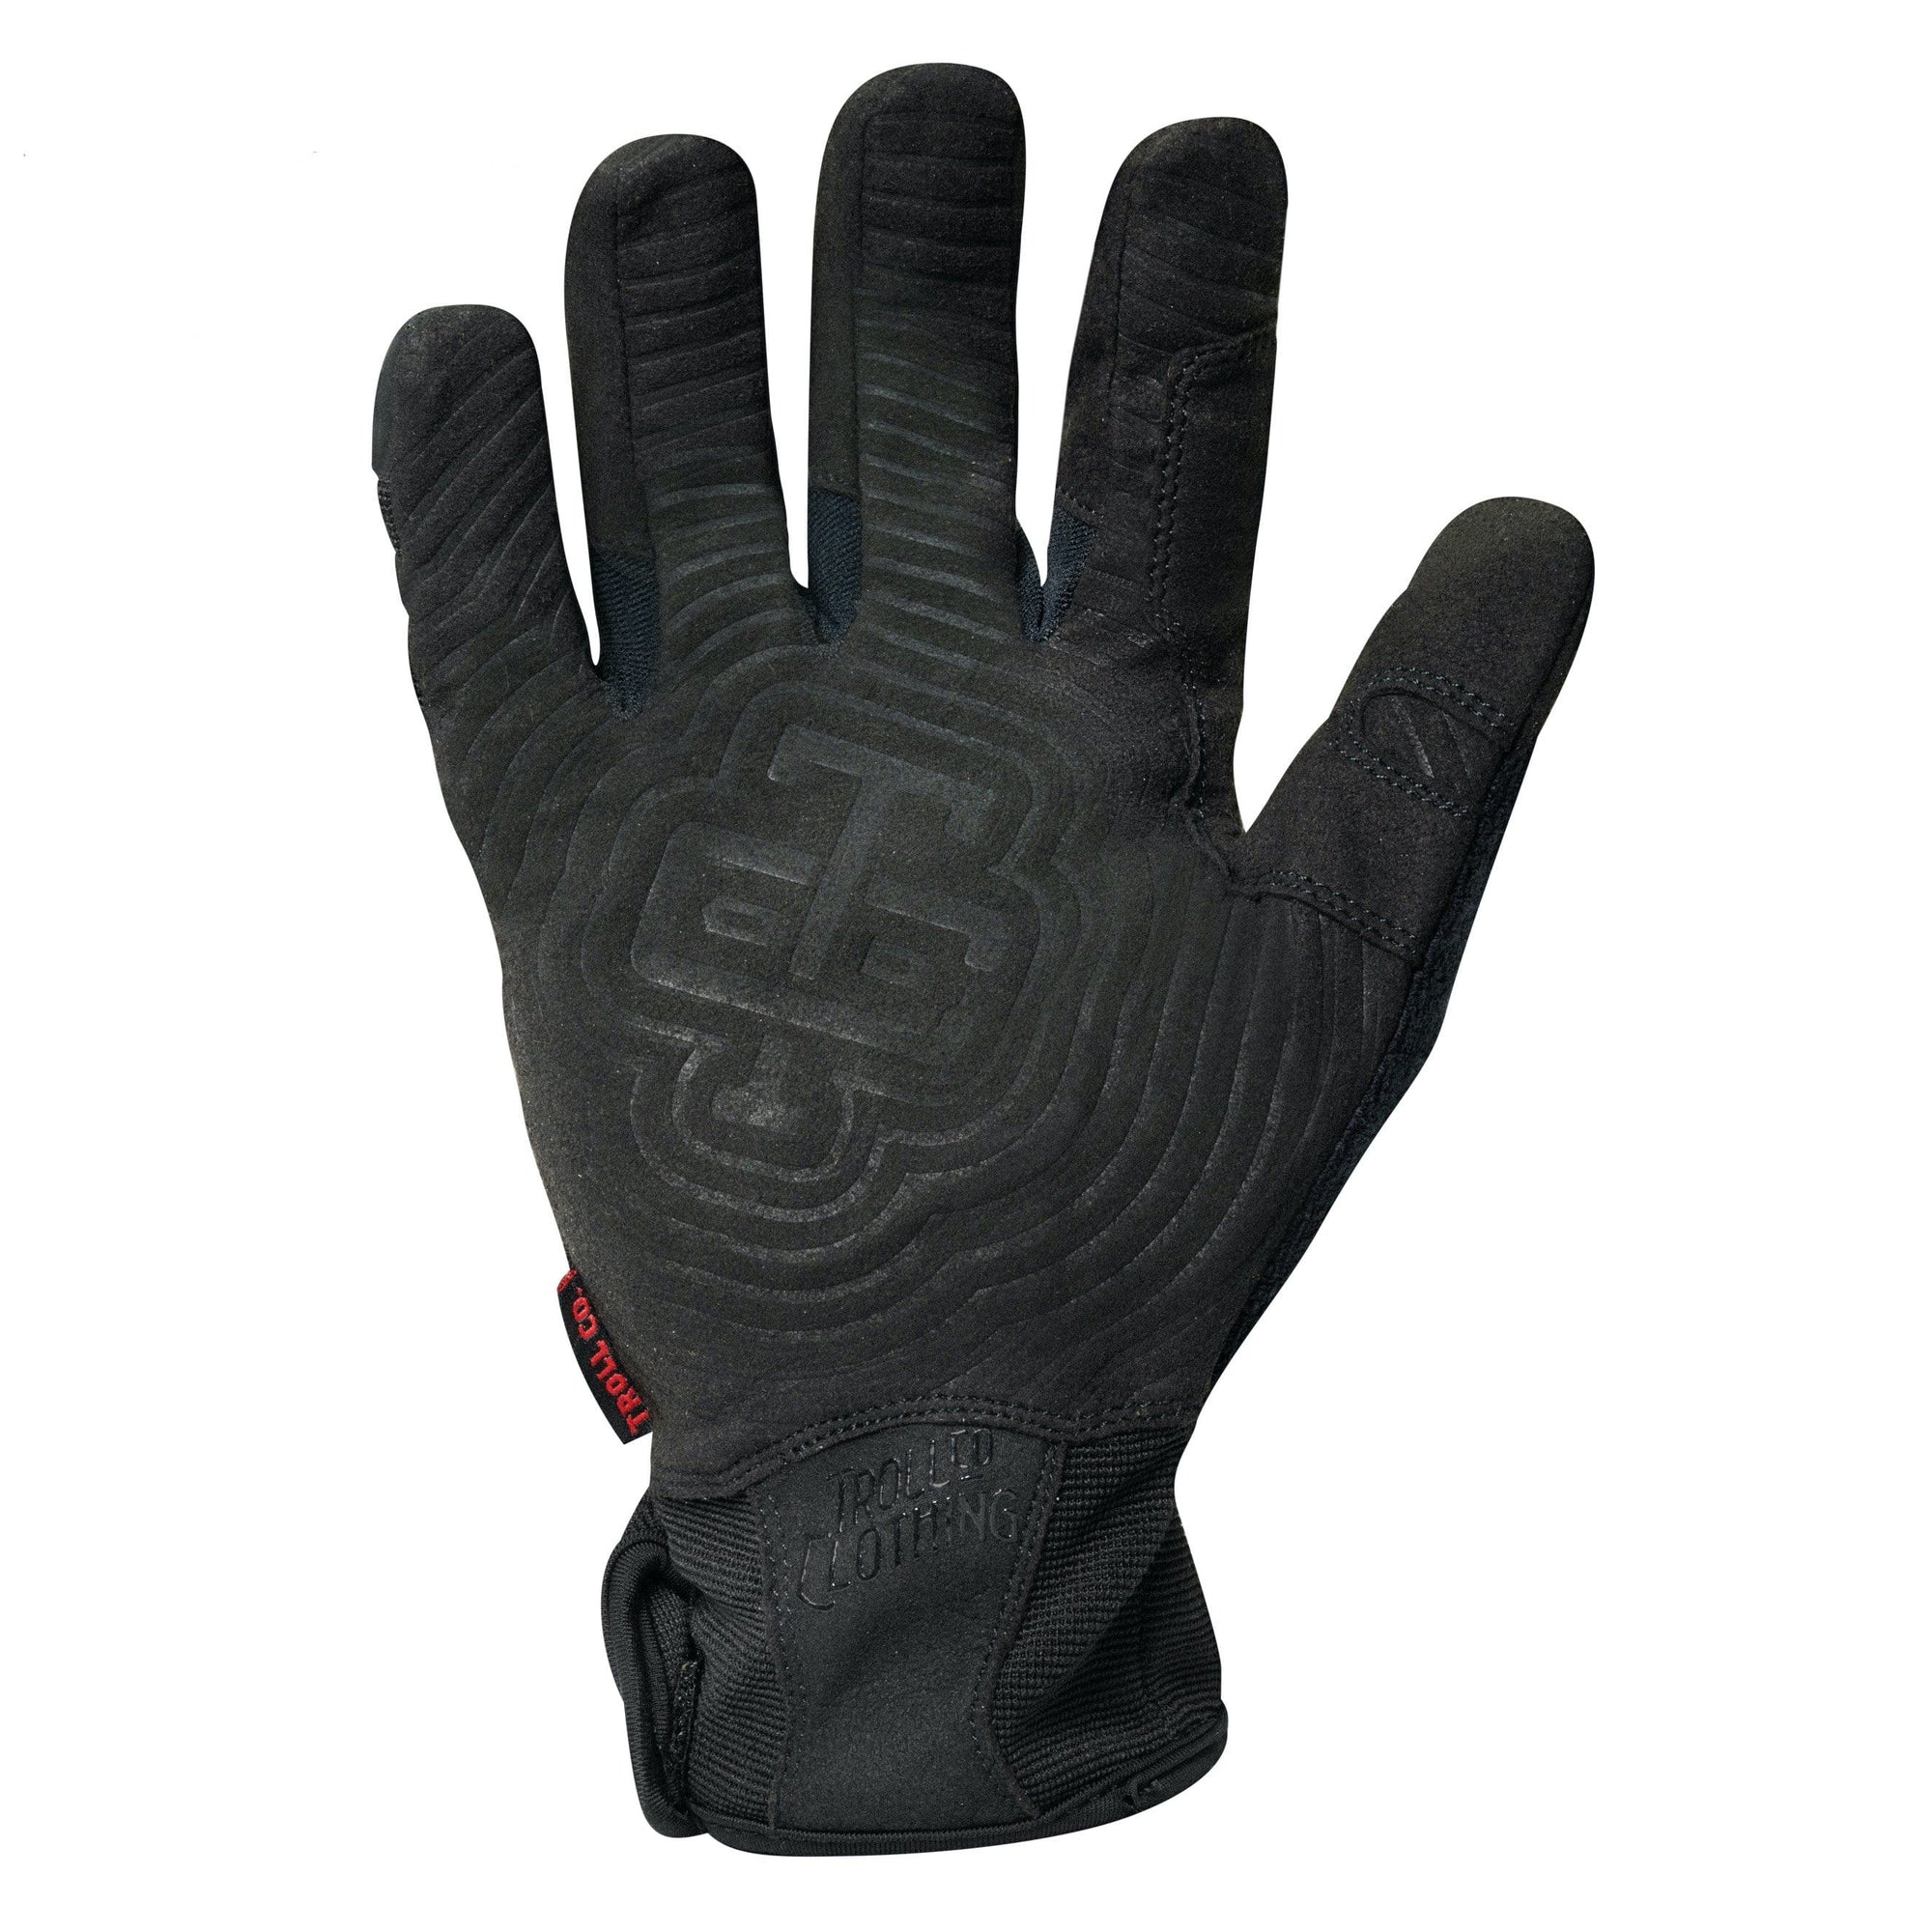 Impact Cut 5 Speedcuff Glove in Black